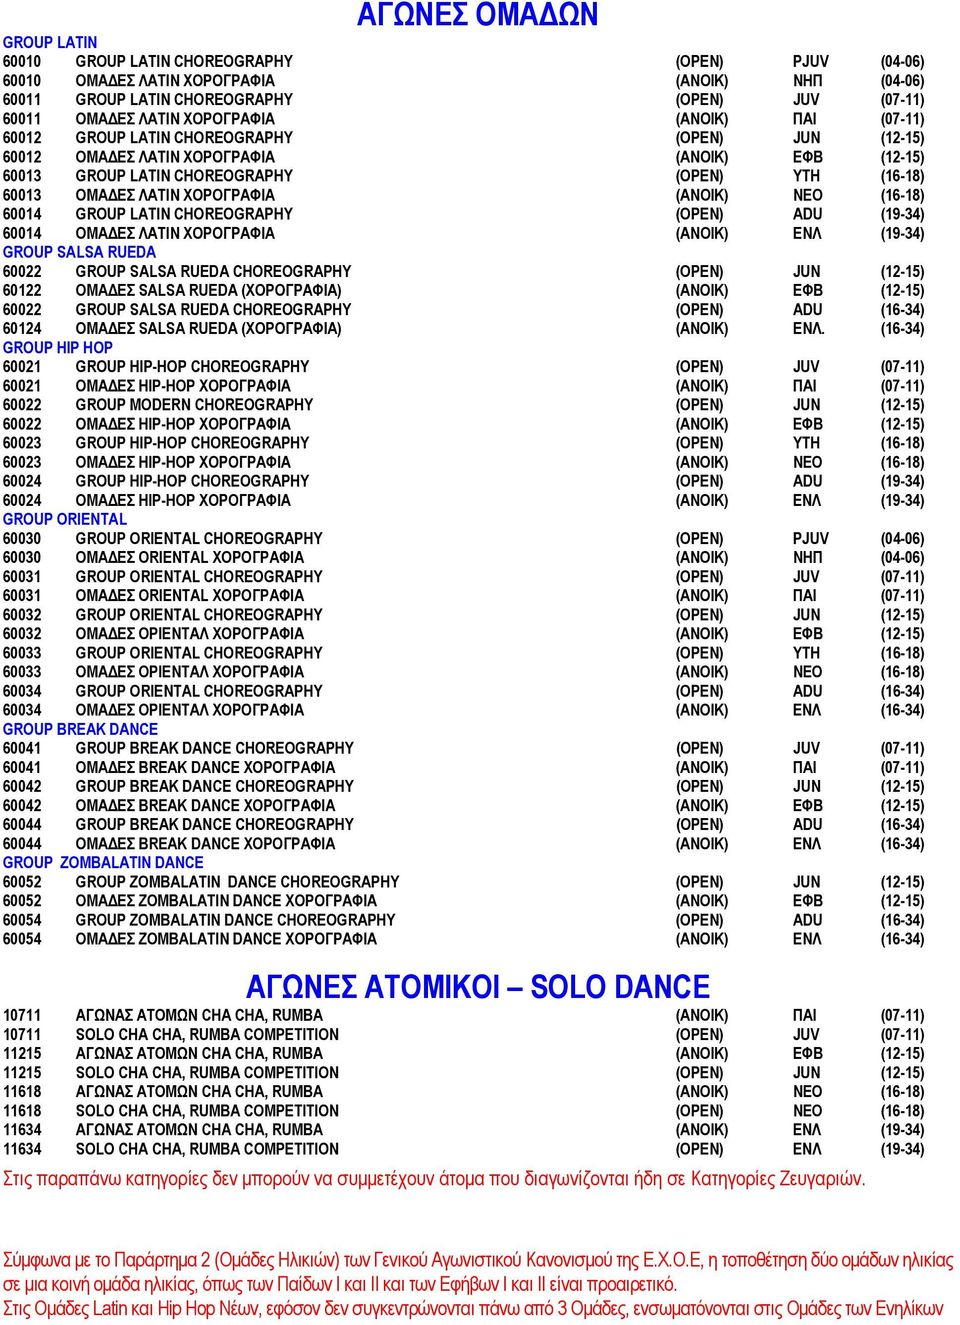 ΧΟΡΟΓΡΑΦΙΑ (ΑΝΟΙΚ) ΝΕΟ (16-18) 60014 GROUP LATIN CHOREOGRAPHY (OPEN) ADU (19-34) 60014 ΟΜΑ ΕΣ ΛΑΤΙΝ ΧΟΡΟΓΡΑΦΙΑ (ΑΝΟΙΚ) ΕΝΛ (19-34) GROUP SALSA RUEDA 60022 GROUP SALSA RUEDA CHOREOGRAPHY (OPEN) JUΝ